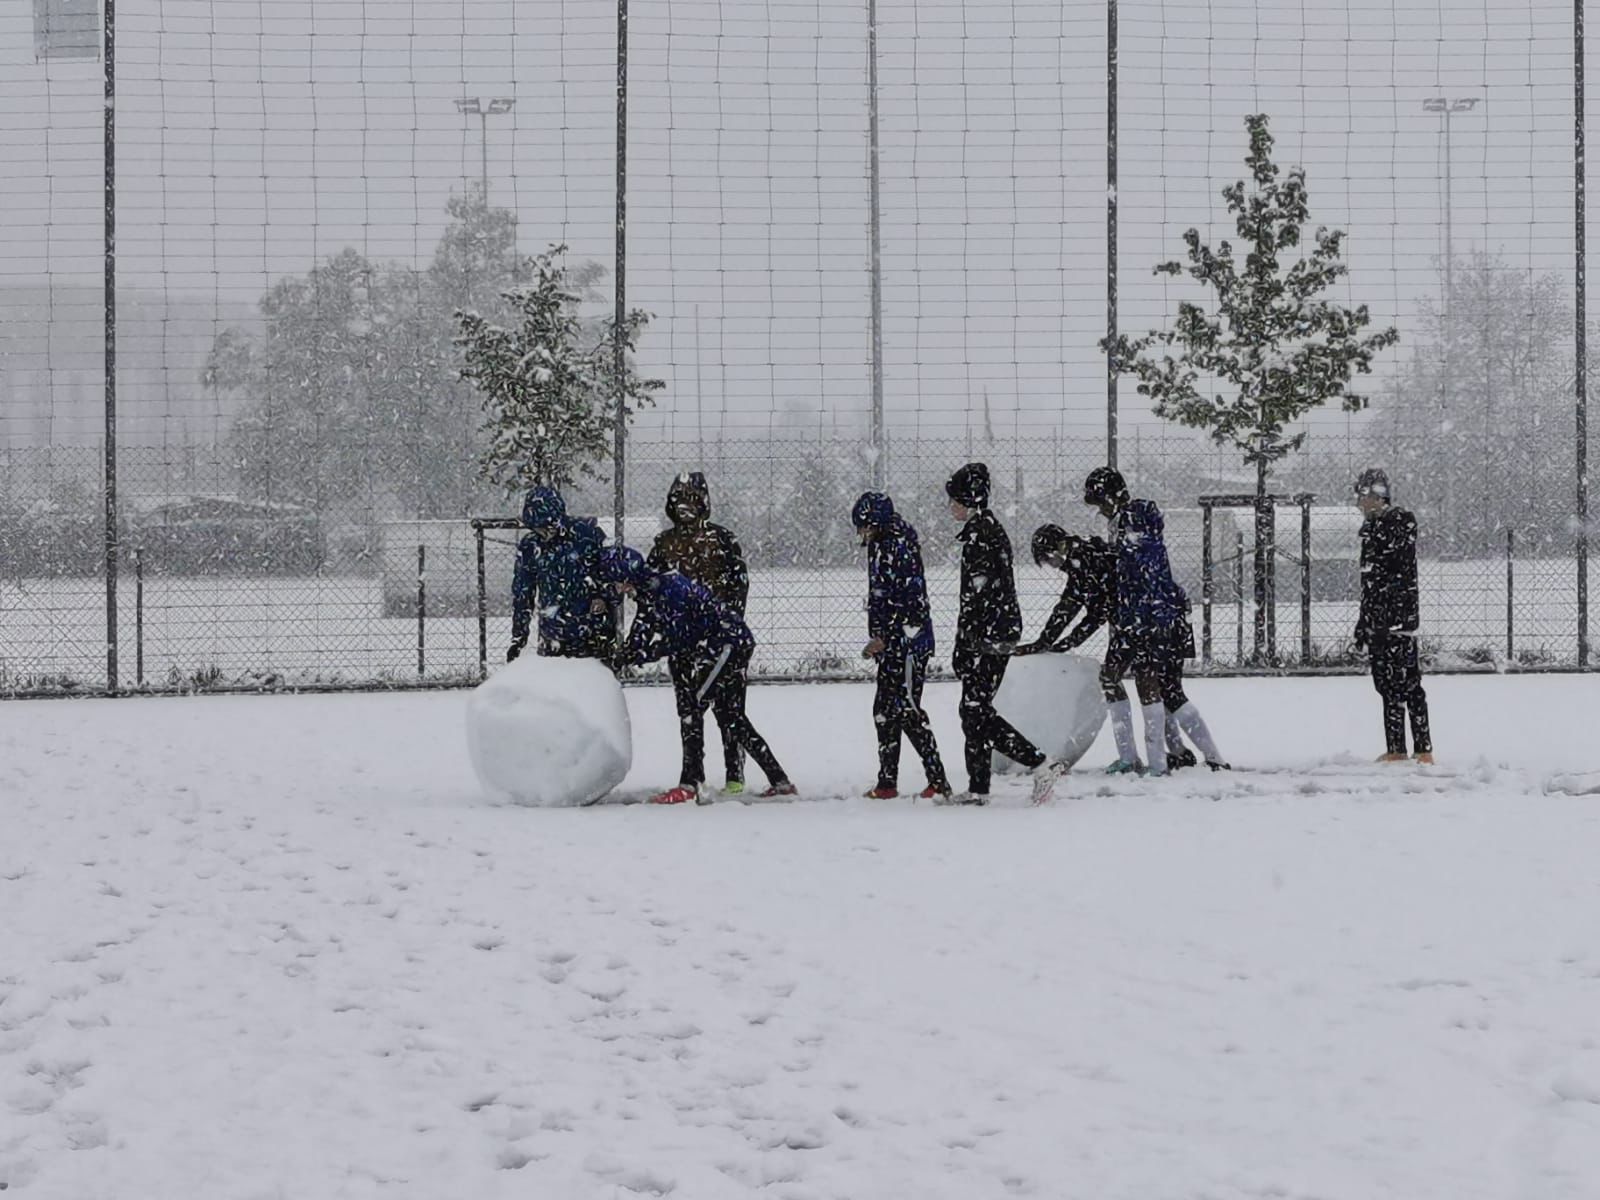 Fussball oder Schneeball?